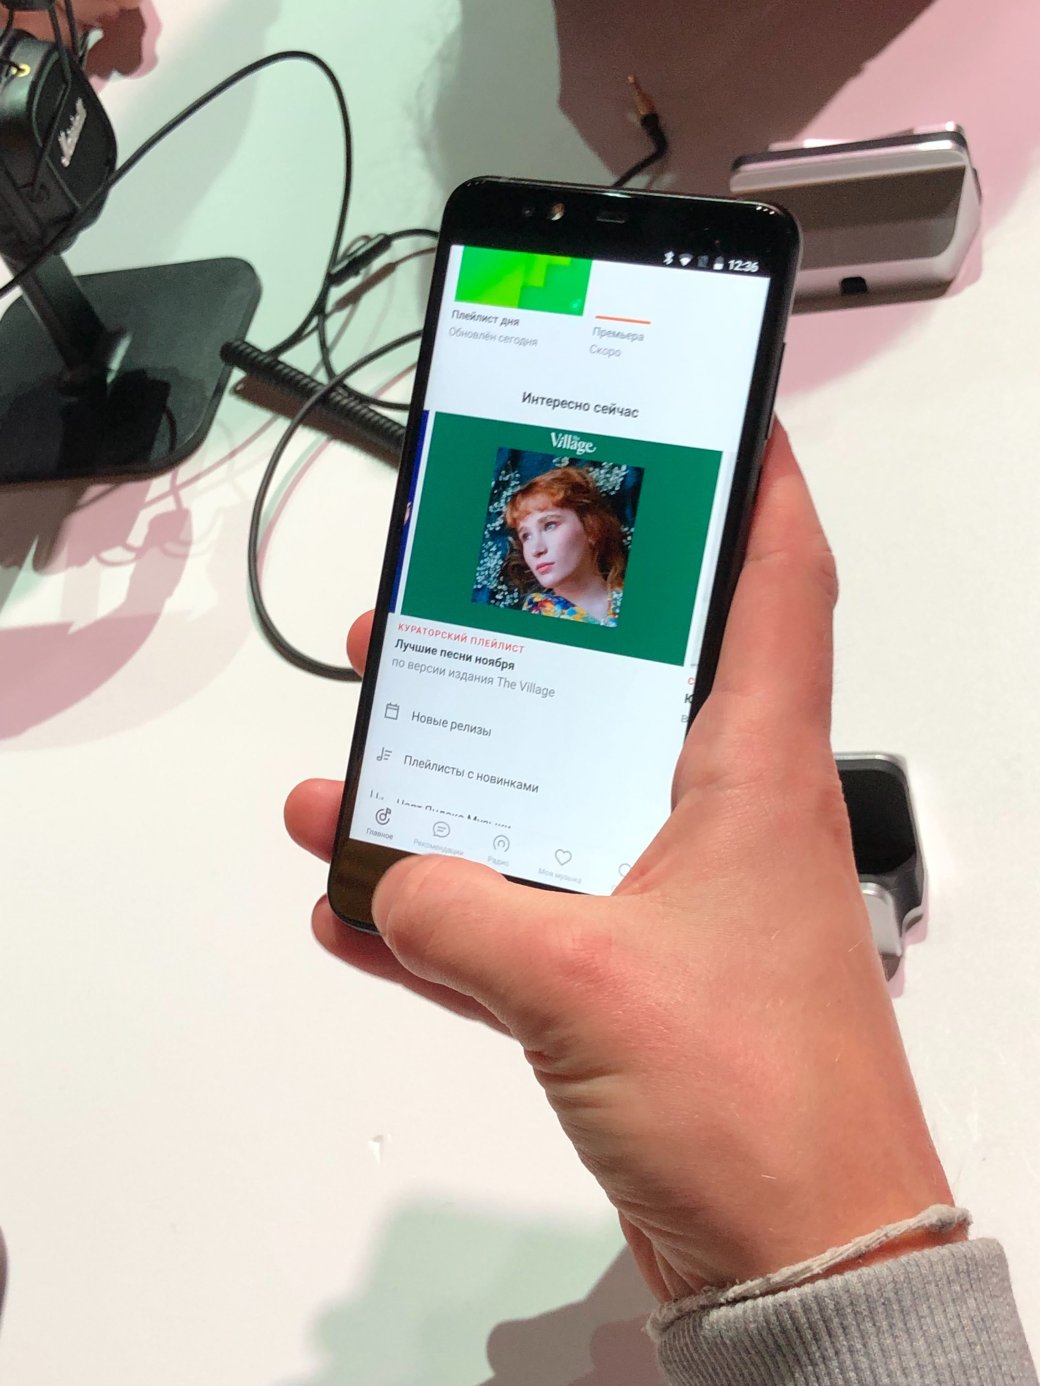 Галерея «Яндекс» выпустил смартфон на базе голосового помощника Алисы. Он называется просто Яндекс.Телефон - 5 фото